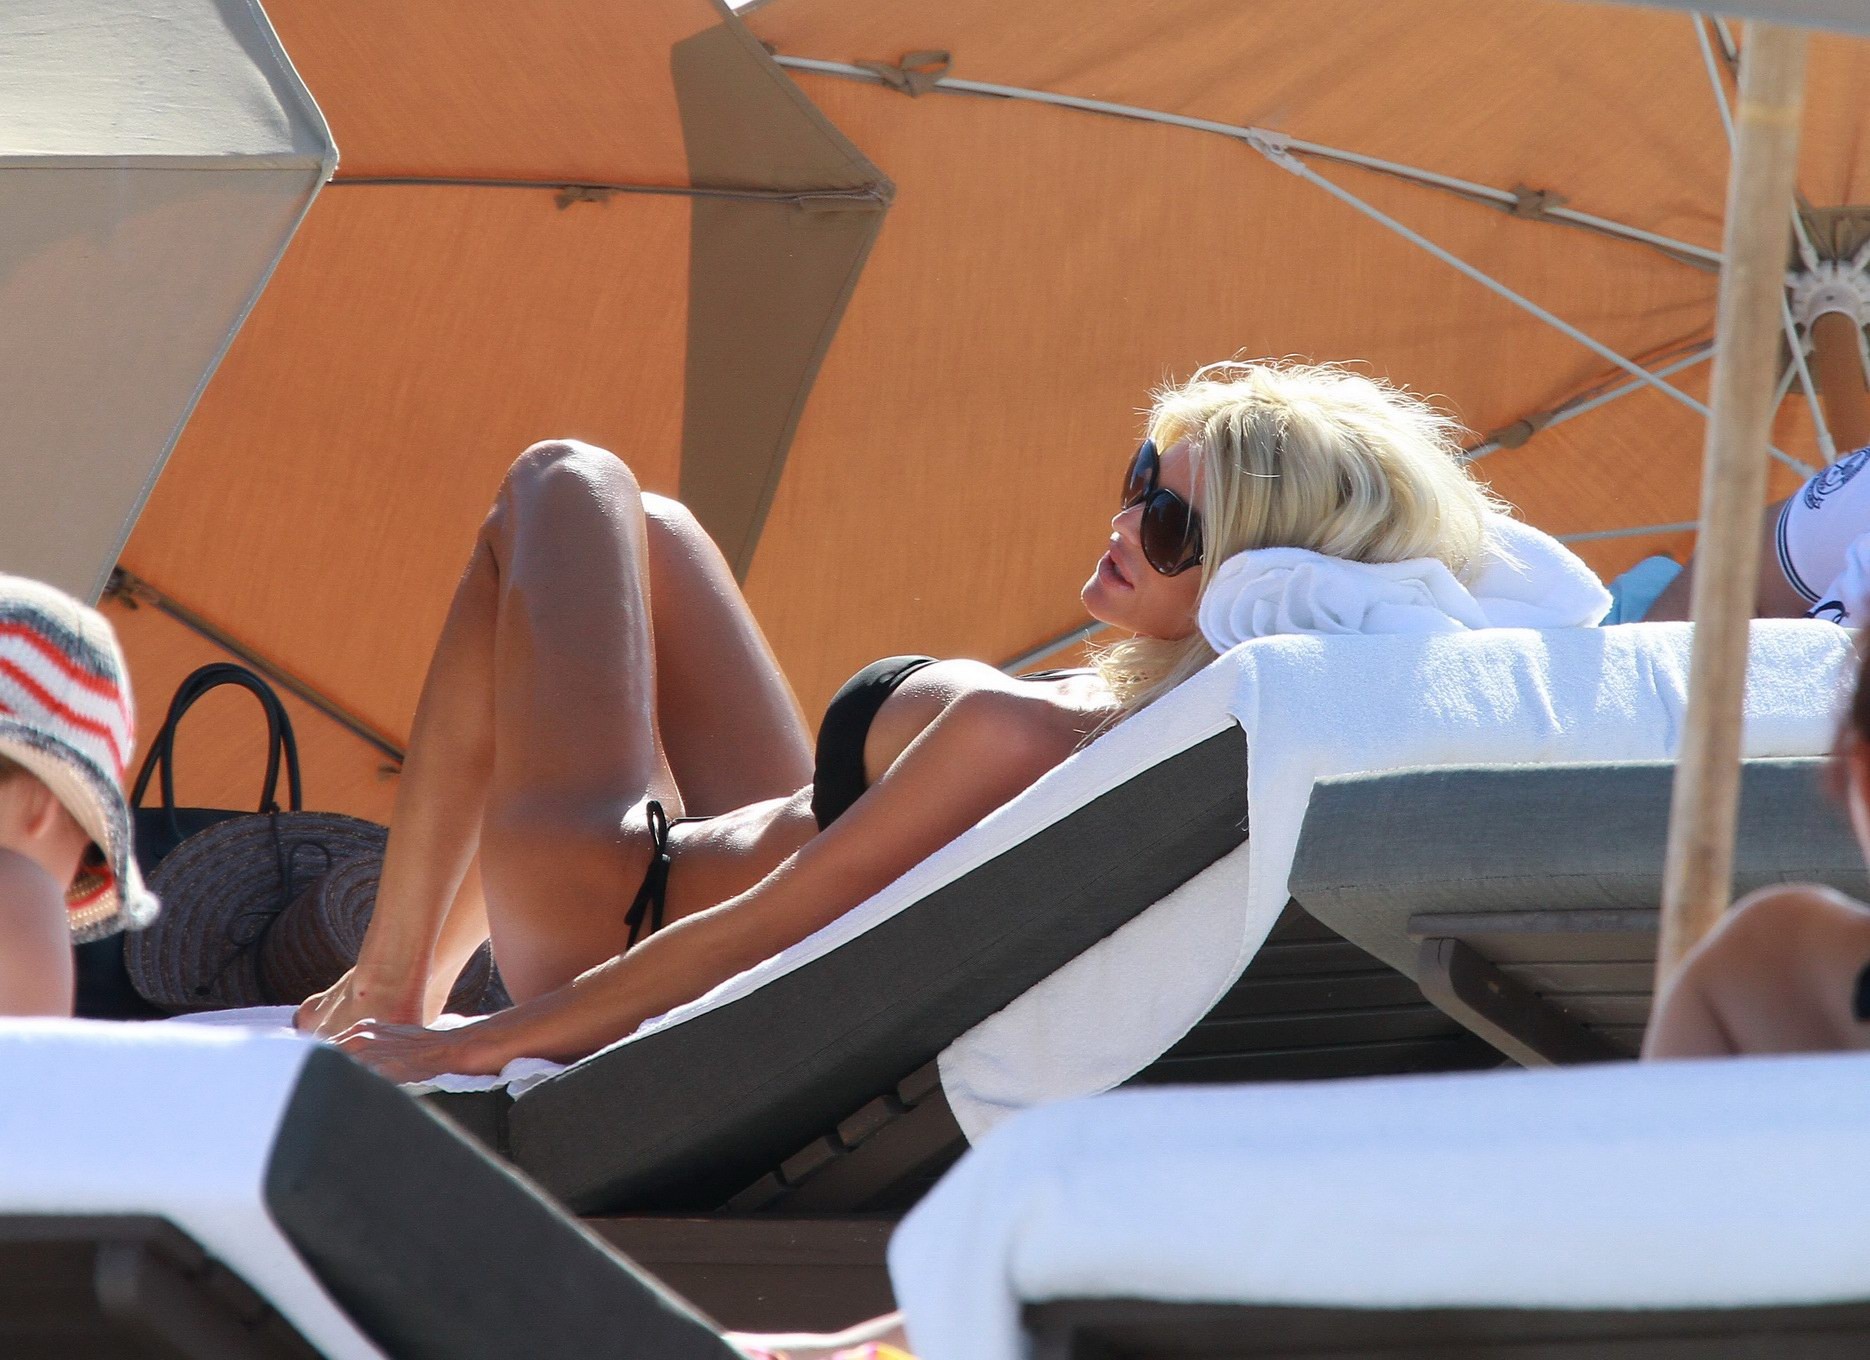 Victoria Silvstedt wearing sexy black bikini on a beach in Miami #75277876